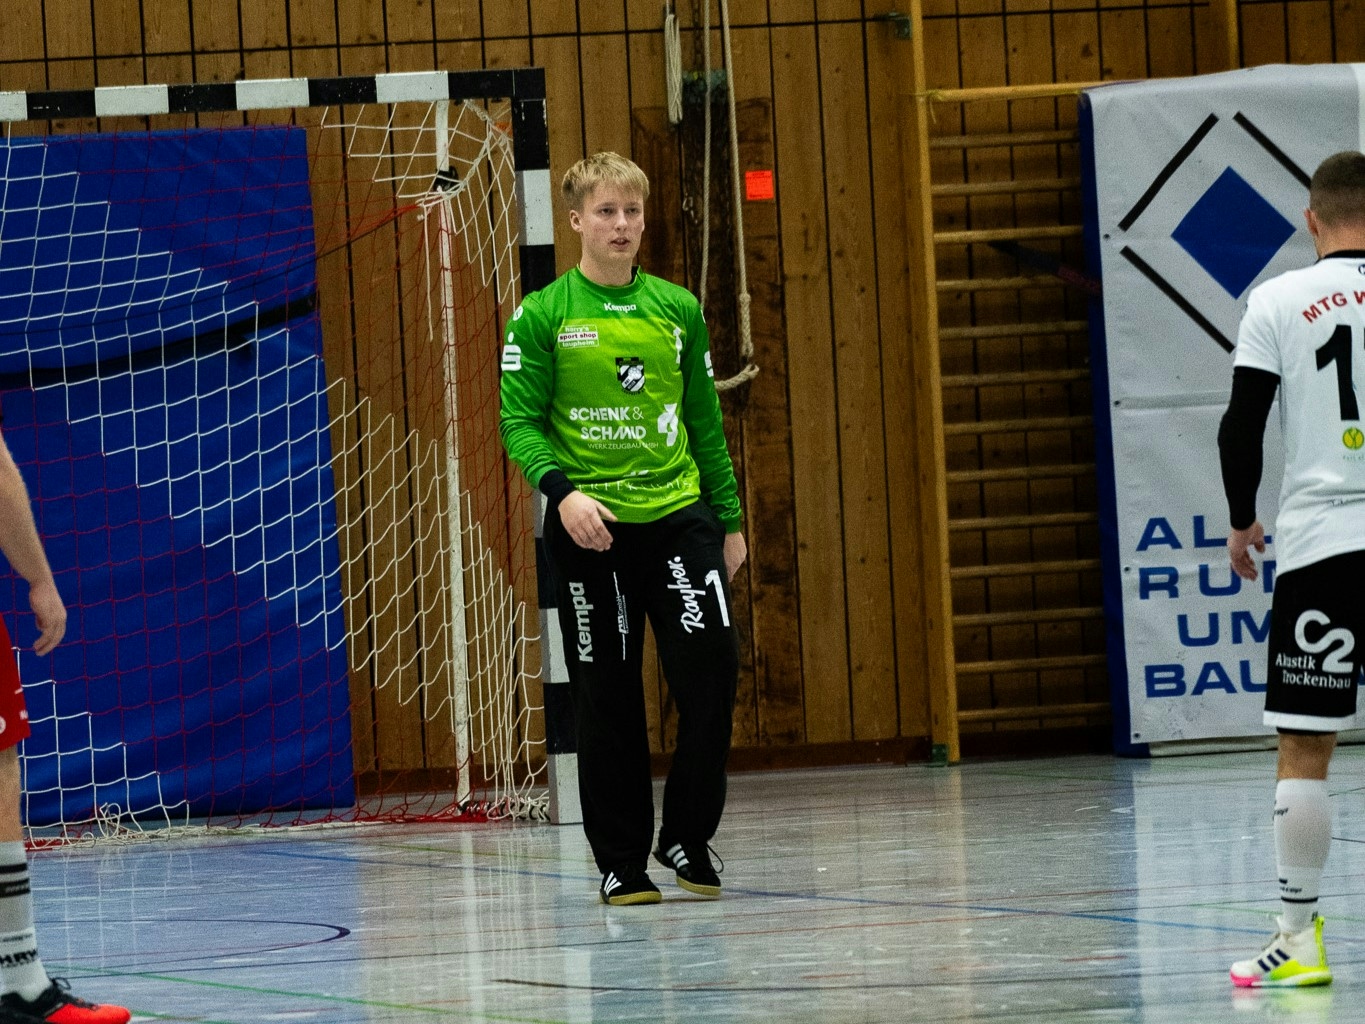 Handball Torwart mit grünem Trikot im Mittelpunkt in einer Sporthalle. Im Hintergrund ist das Tor zu sehen, am linken und rechten Rand des Bildes steht jeweils ein weiterer Spieler